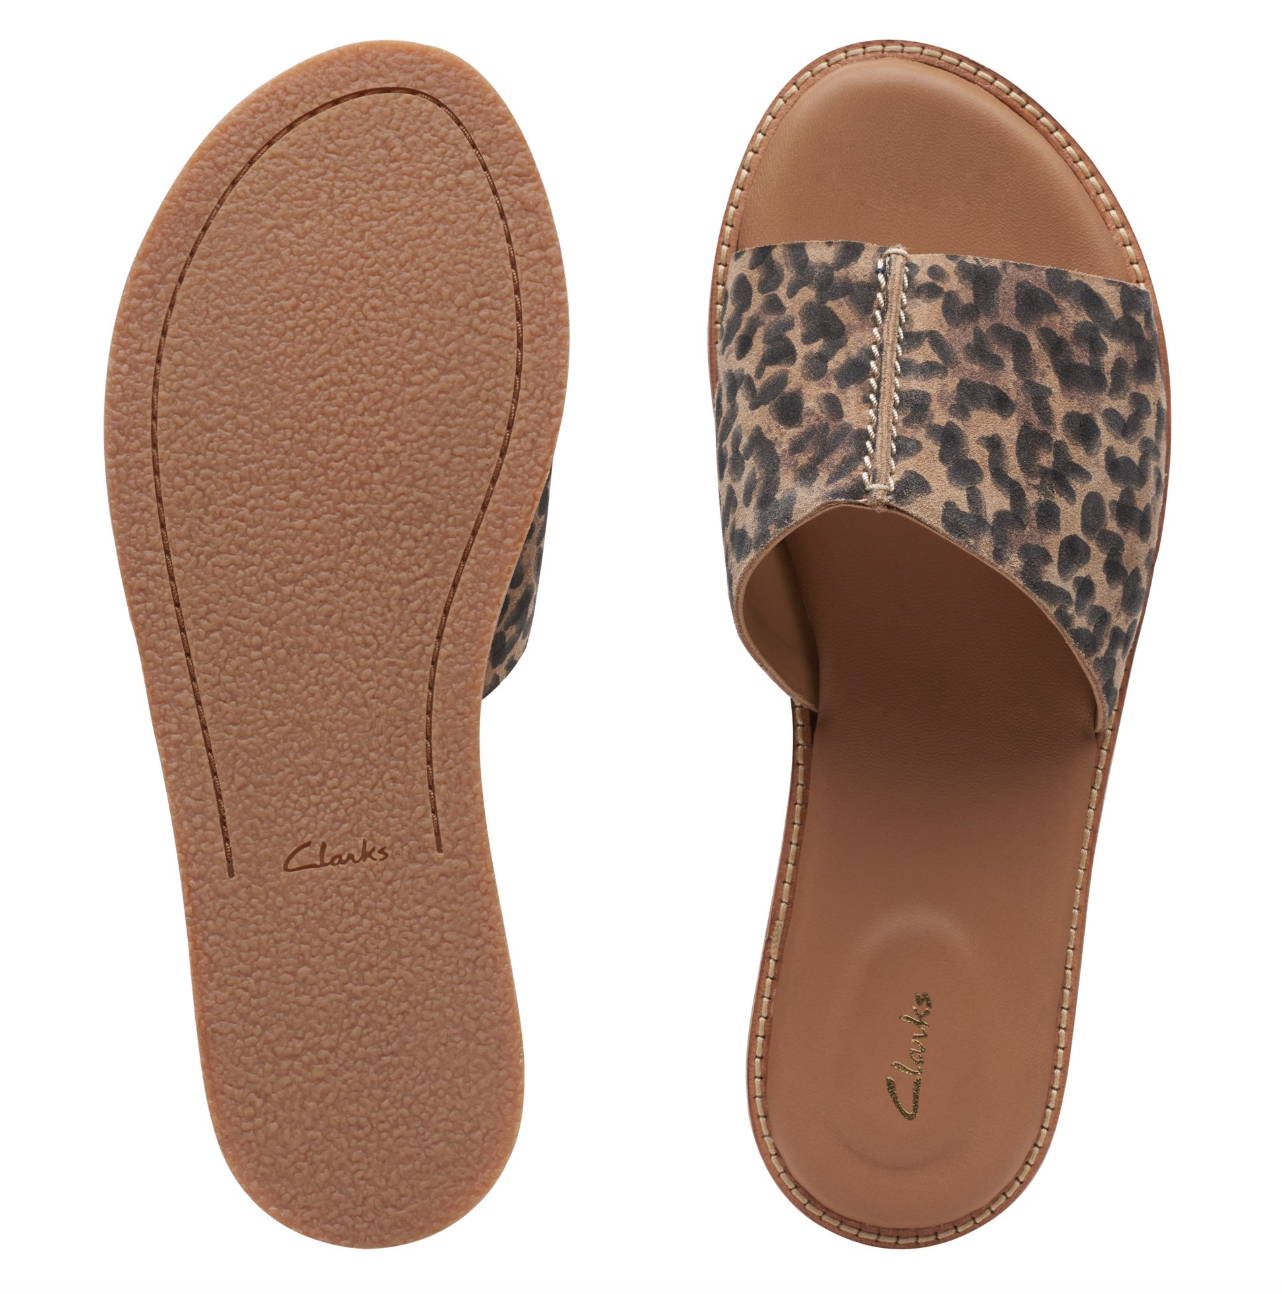 mule sandals in leopard print